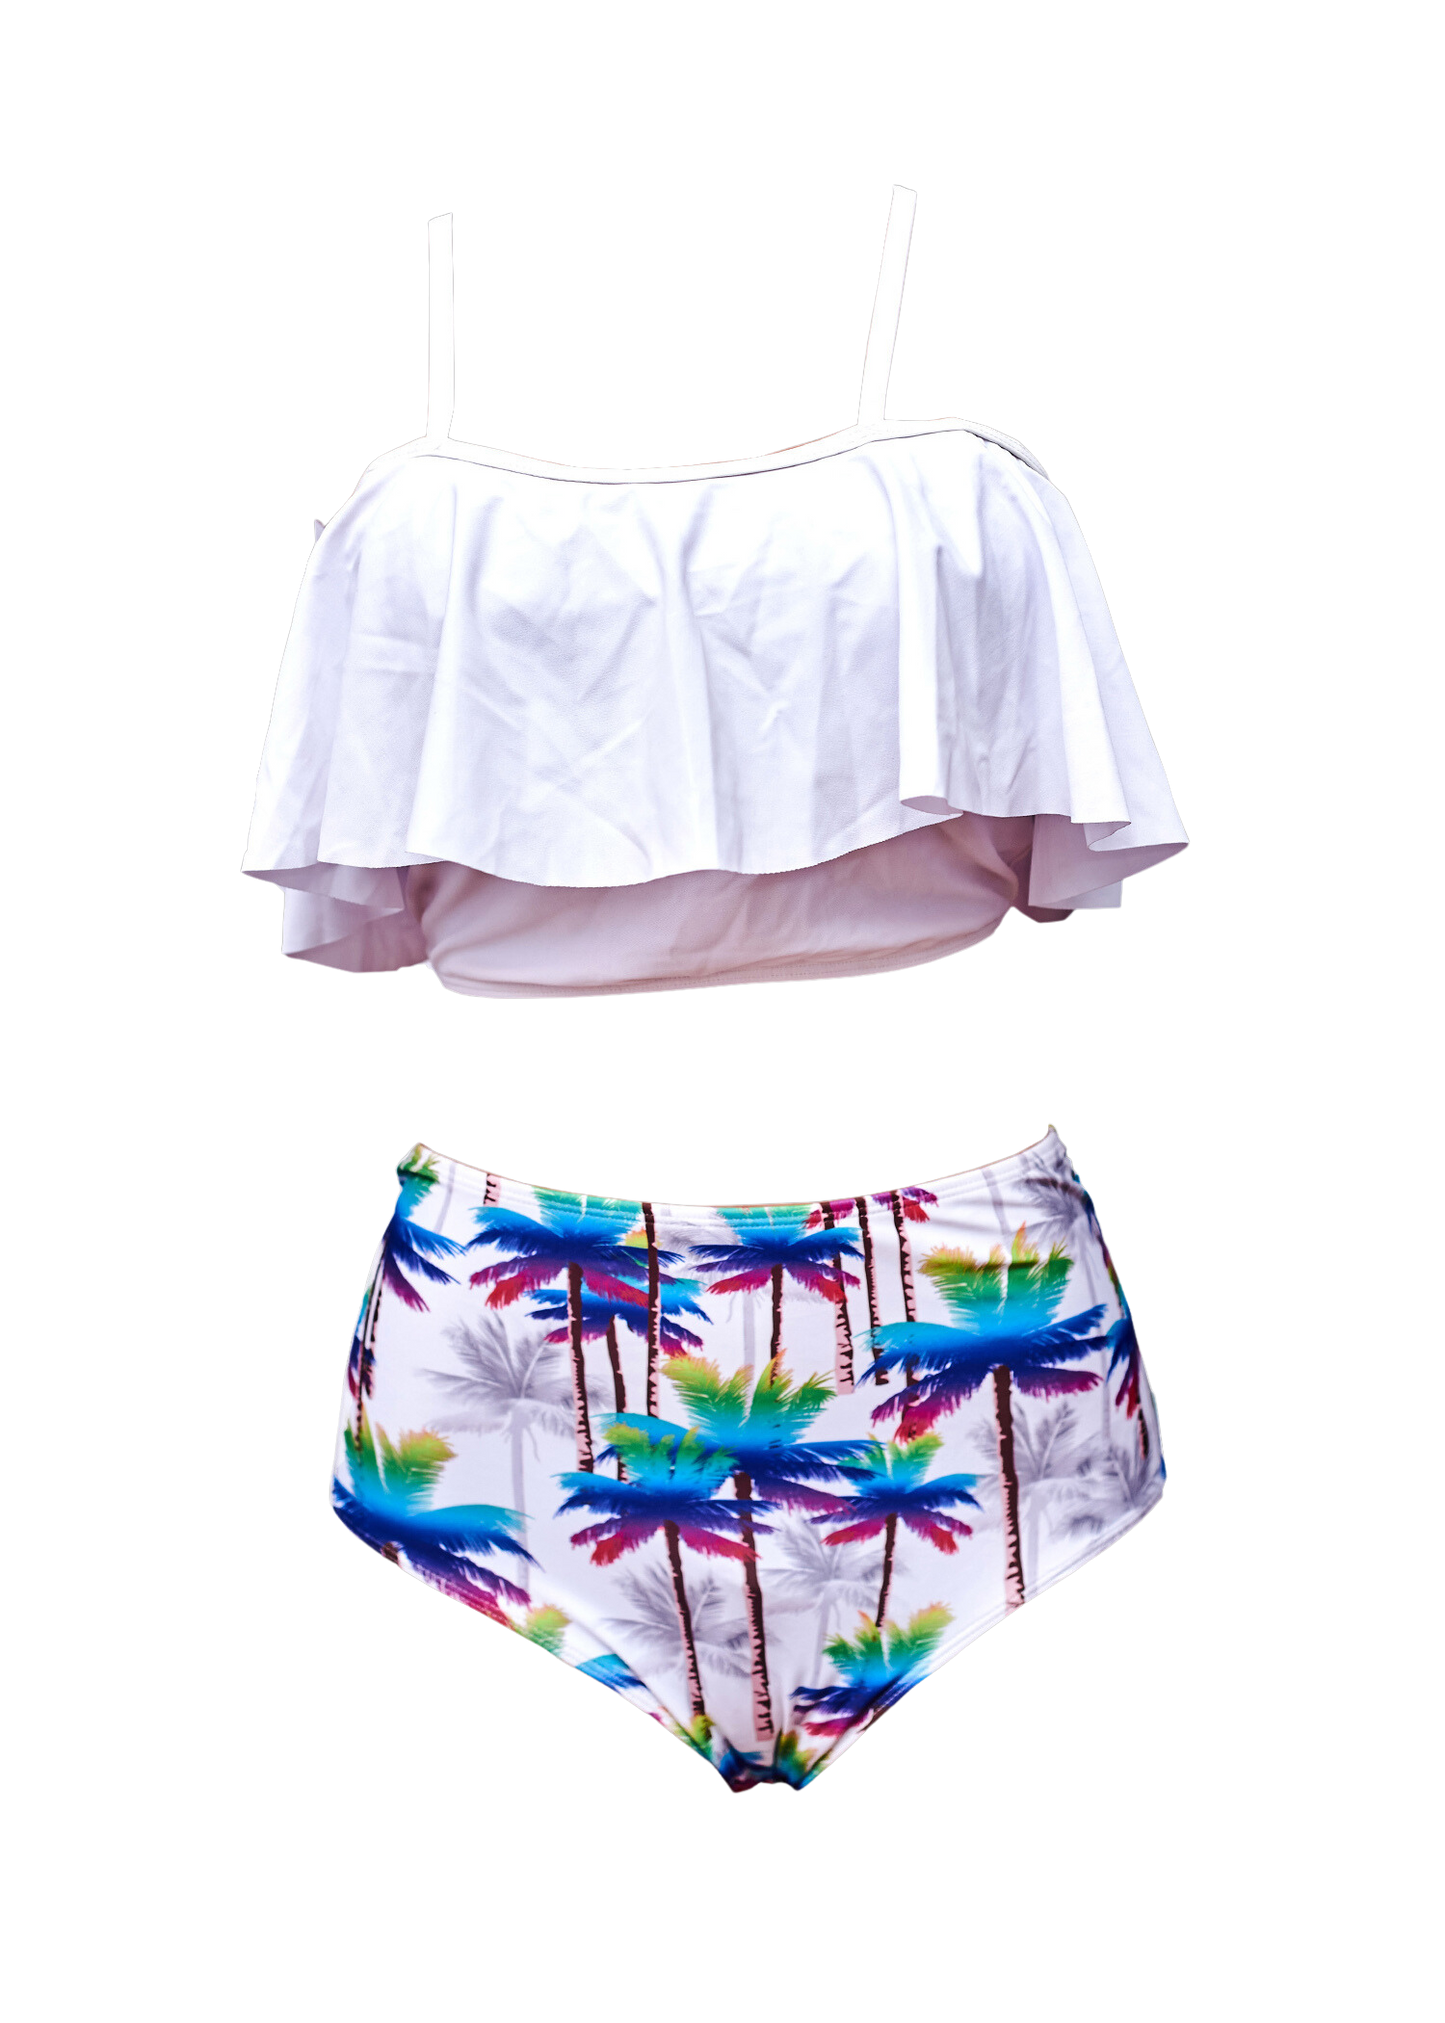 White Top Palm Tree Print Bottoms Bikini